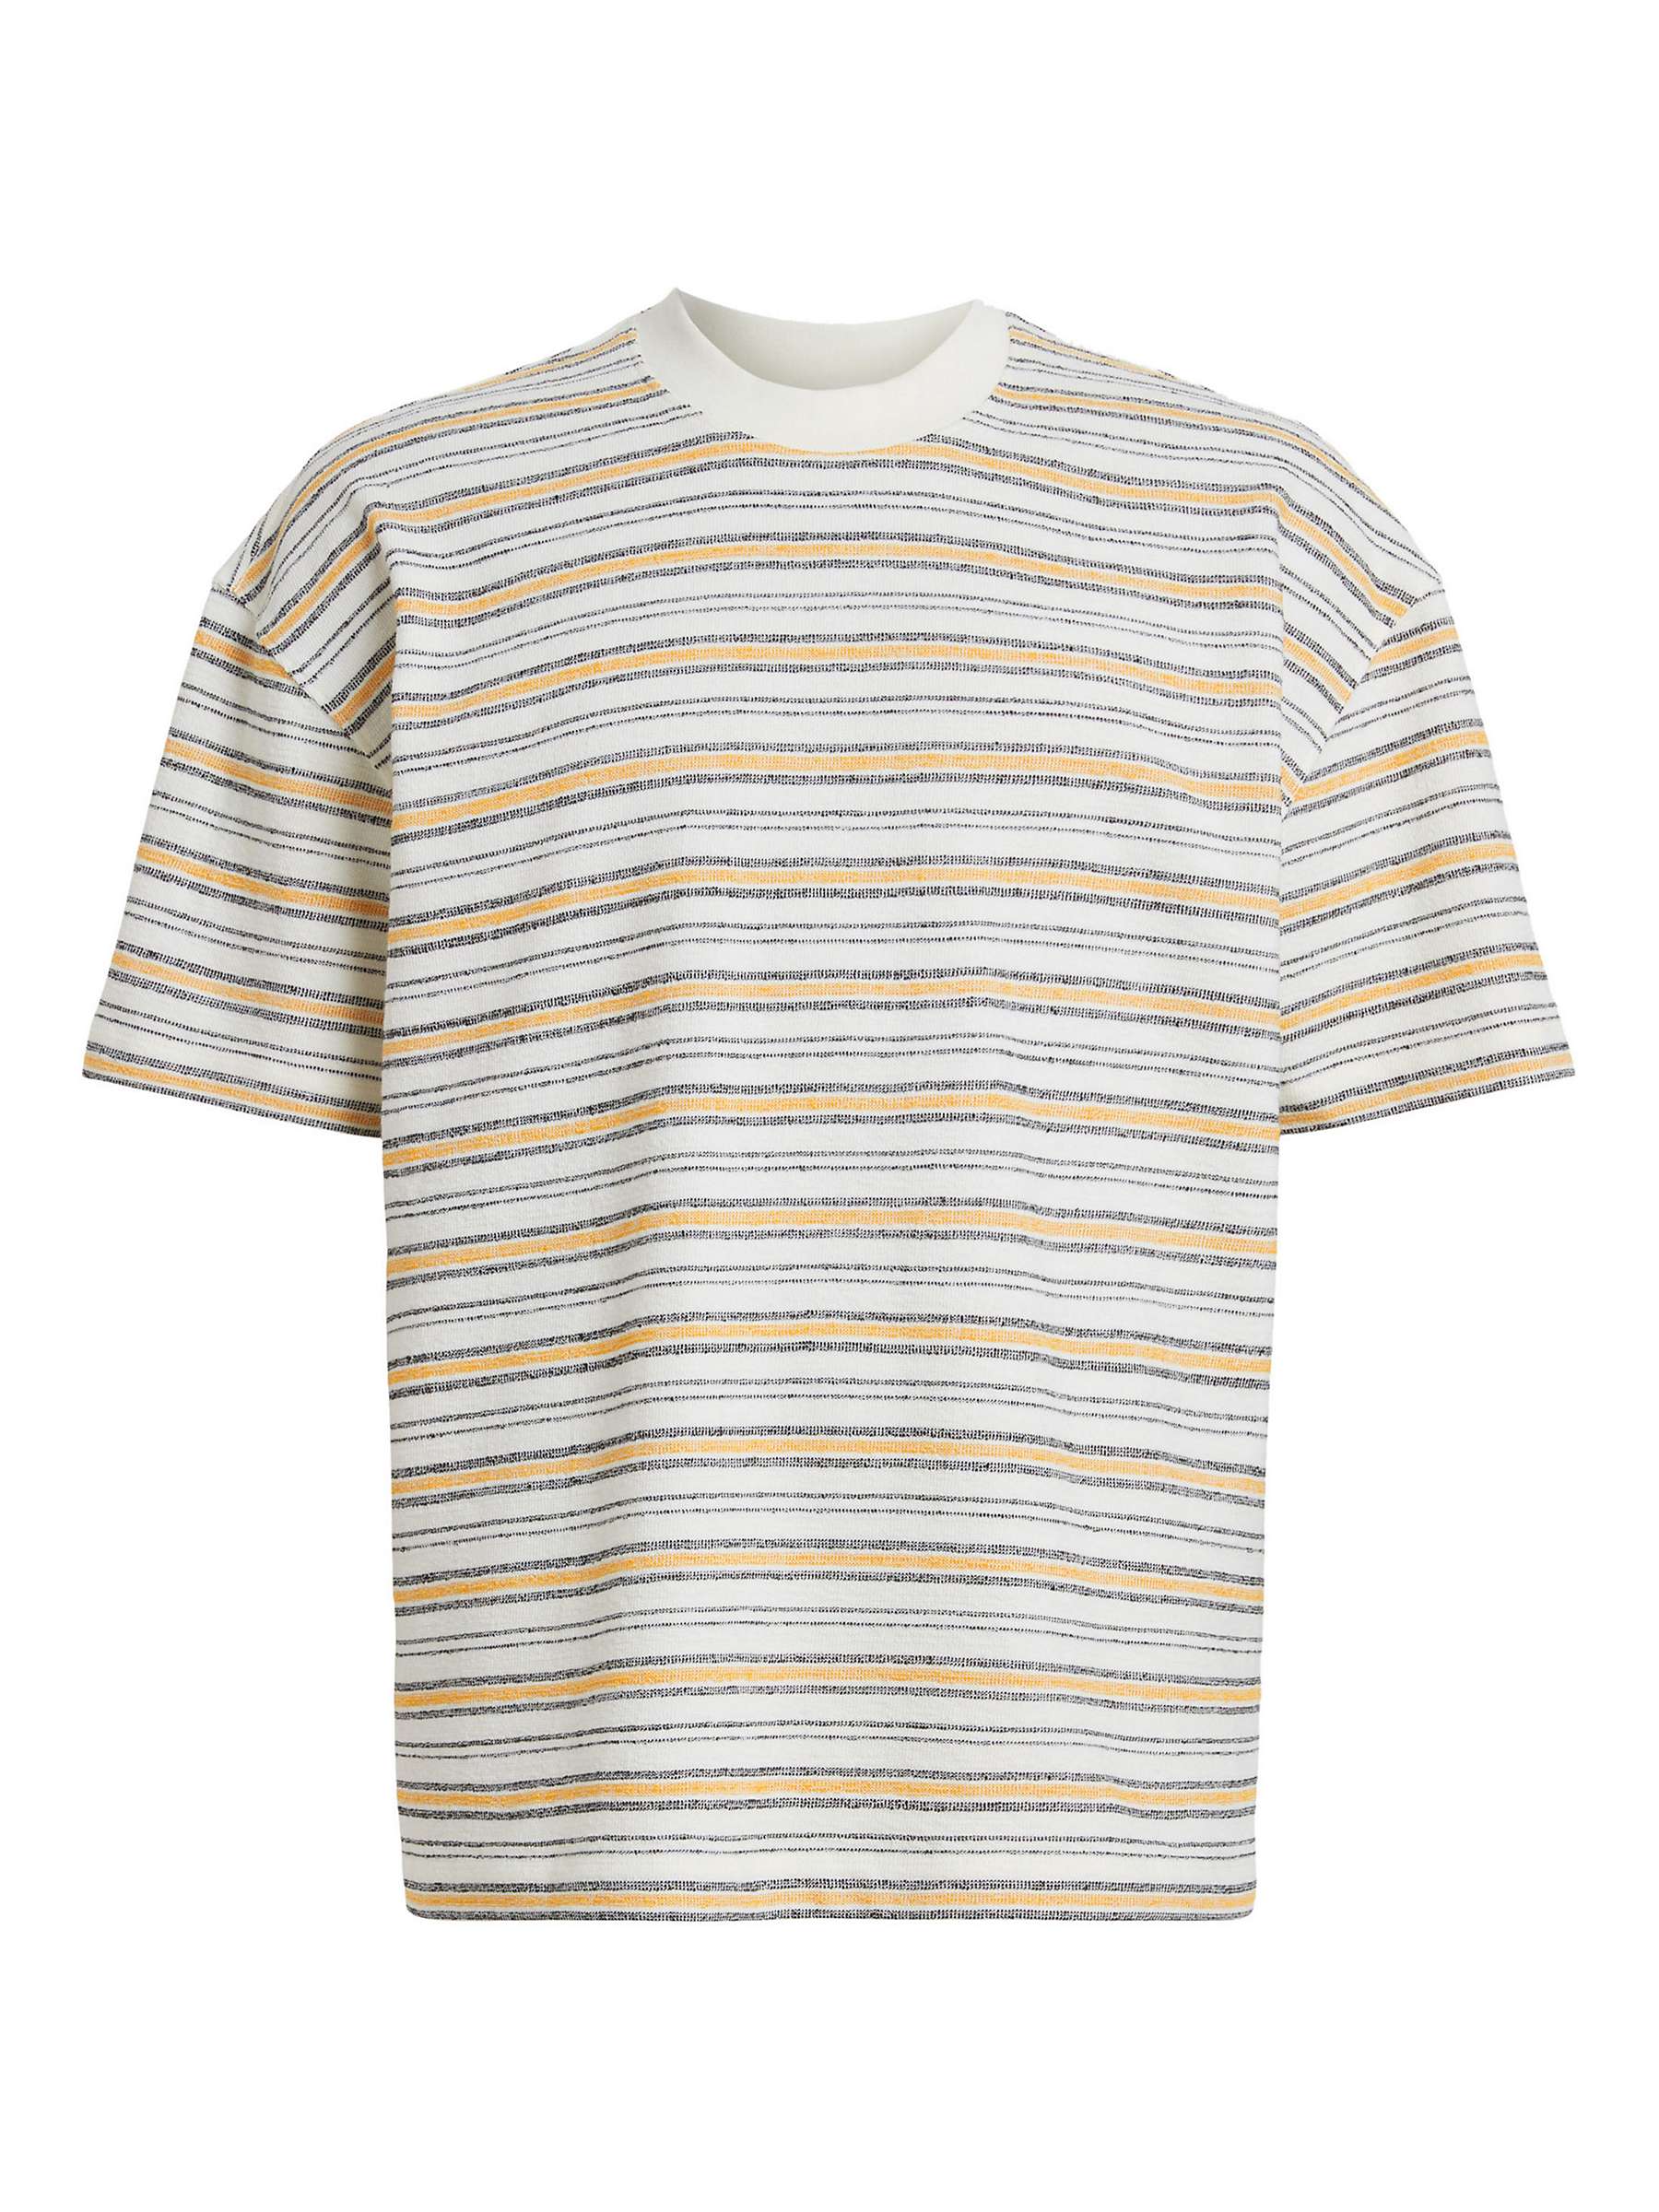 Buy AllSaints Stanton Short Sleeve Crew T-Shirt, White/Multi Online at johnlewis.com